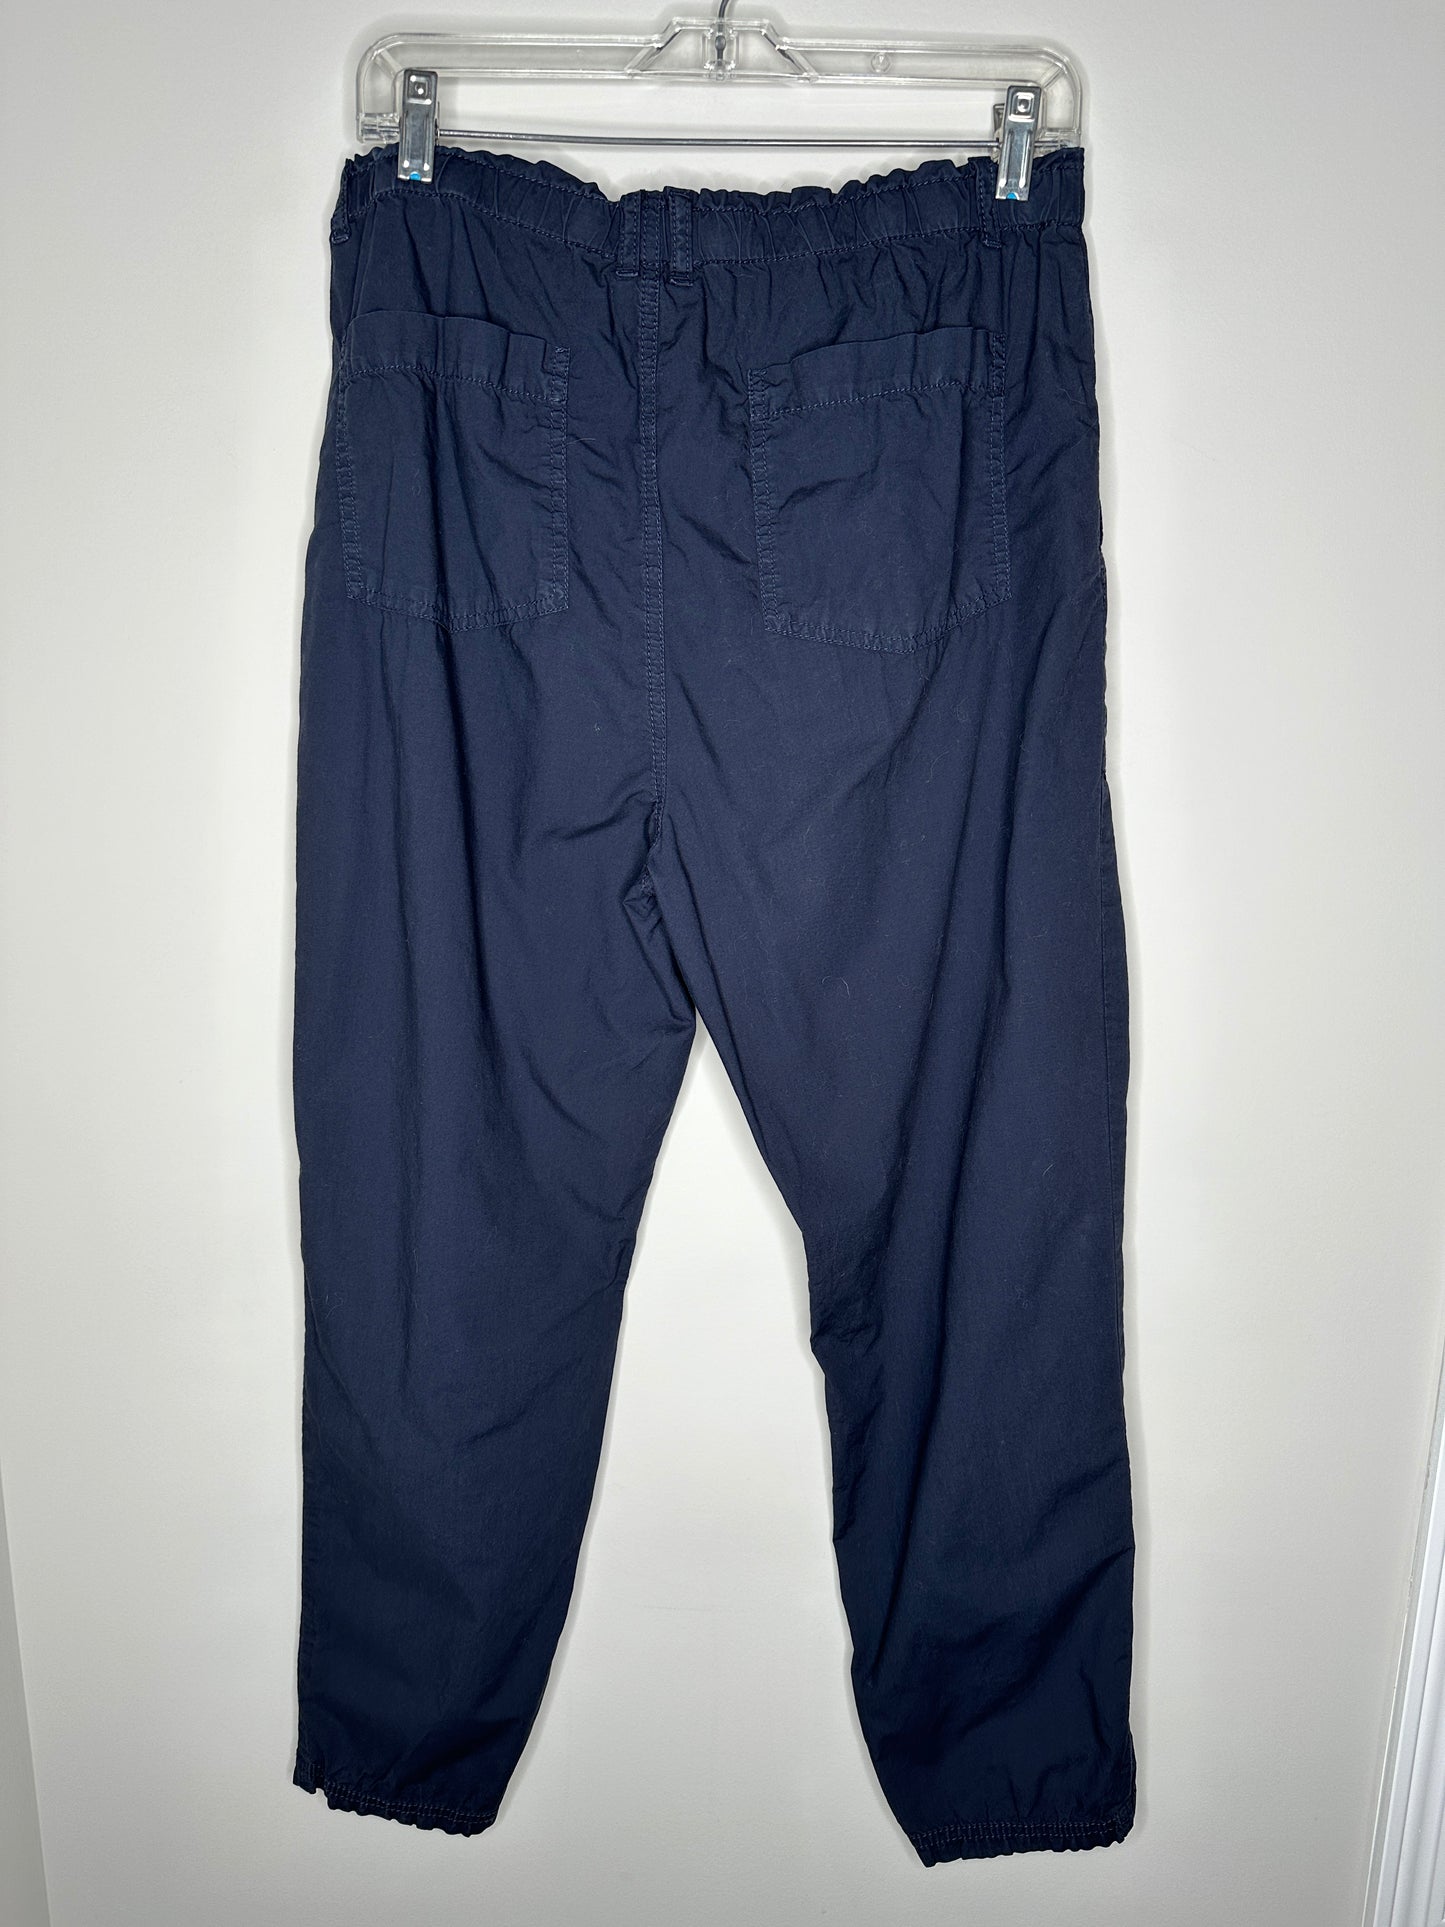 Lou & Grey Size M Navy Blue Cotton Elastic Waist Pants